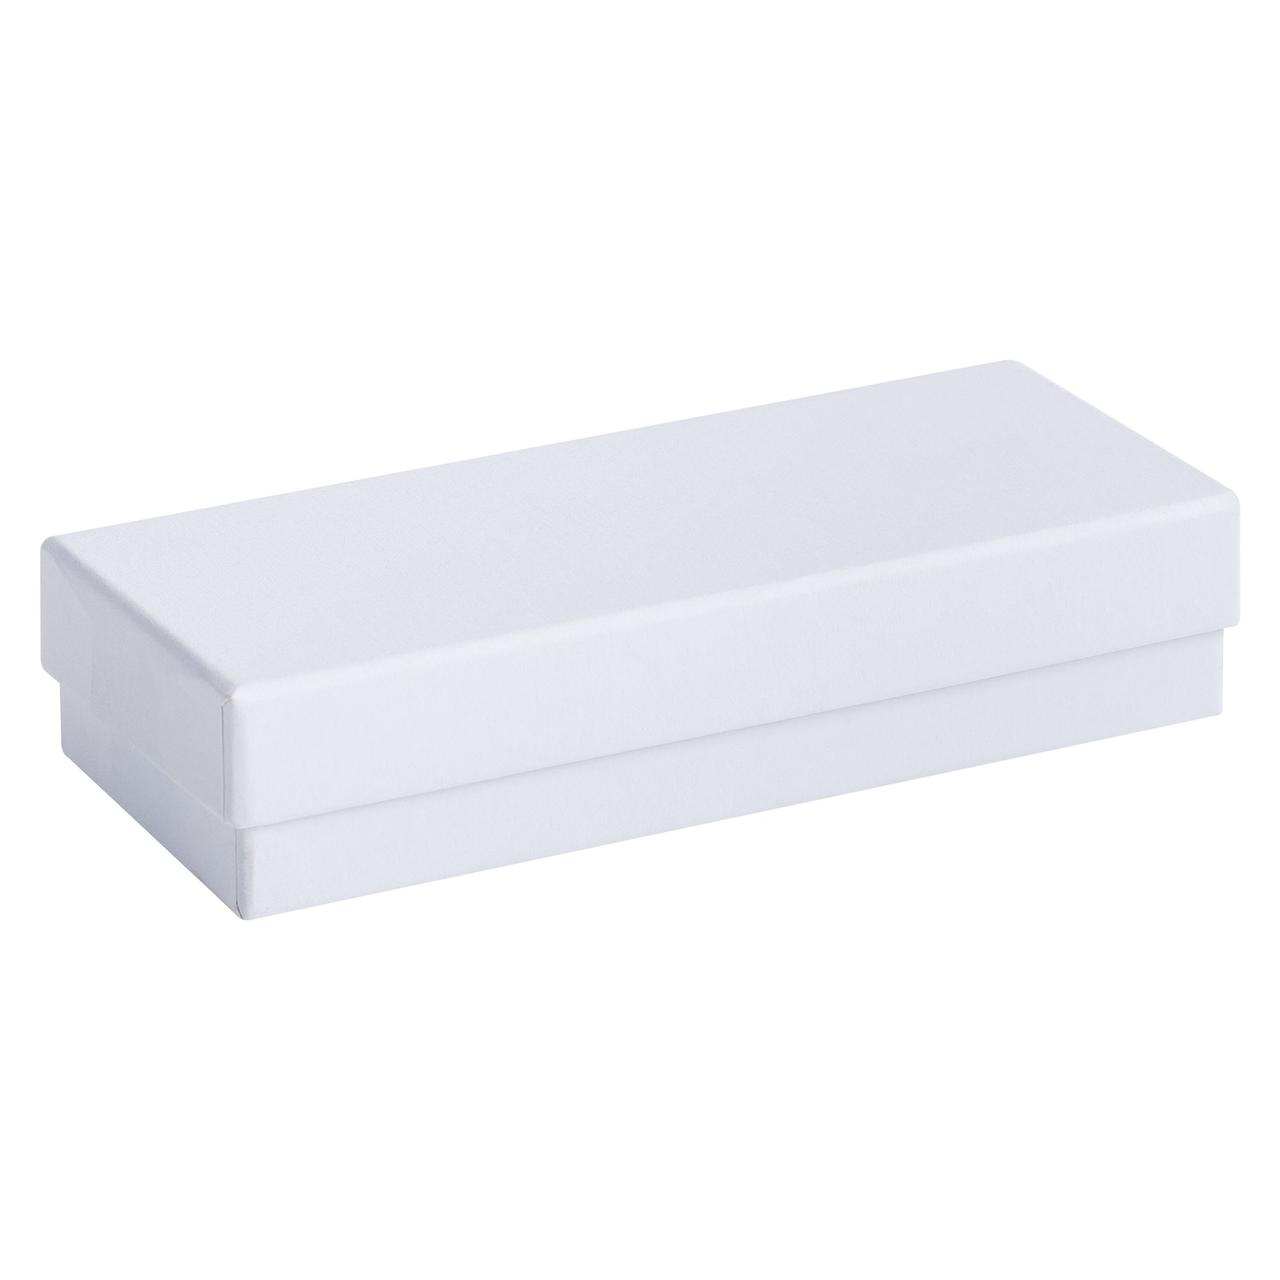 Коробка Mini, белая (артикул 3387.60)